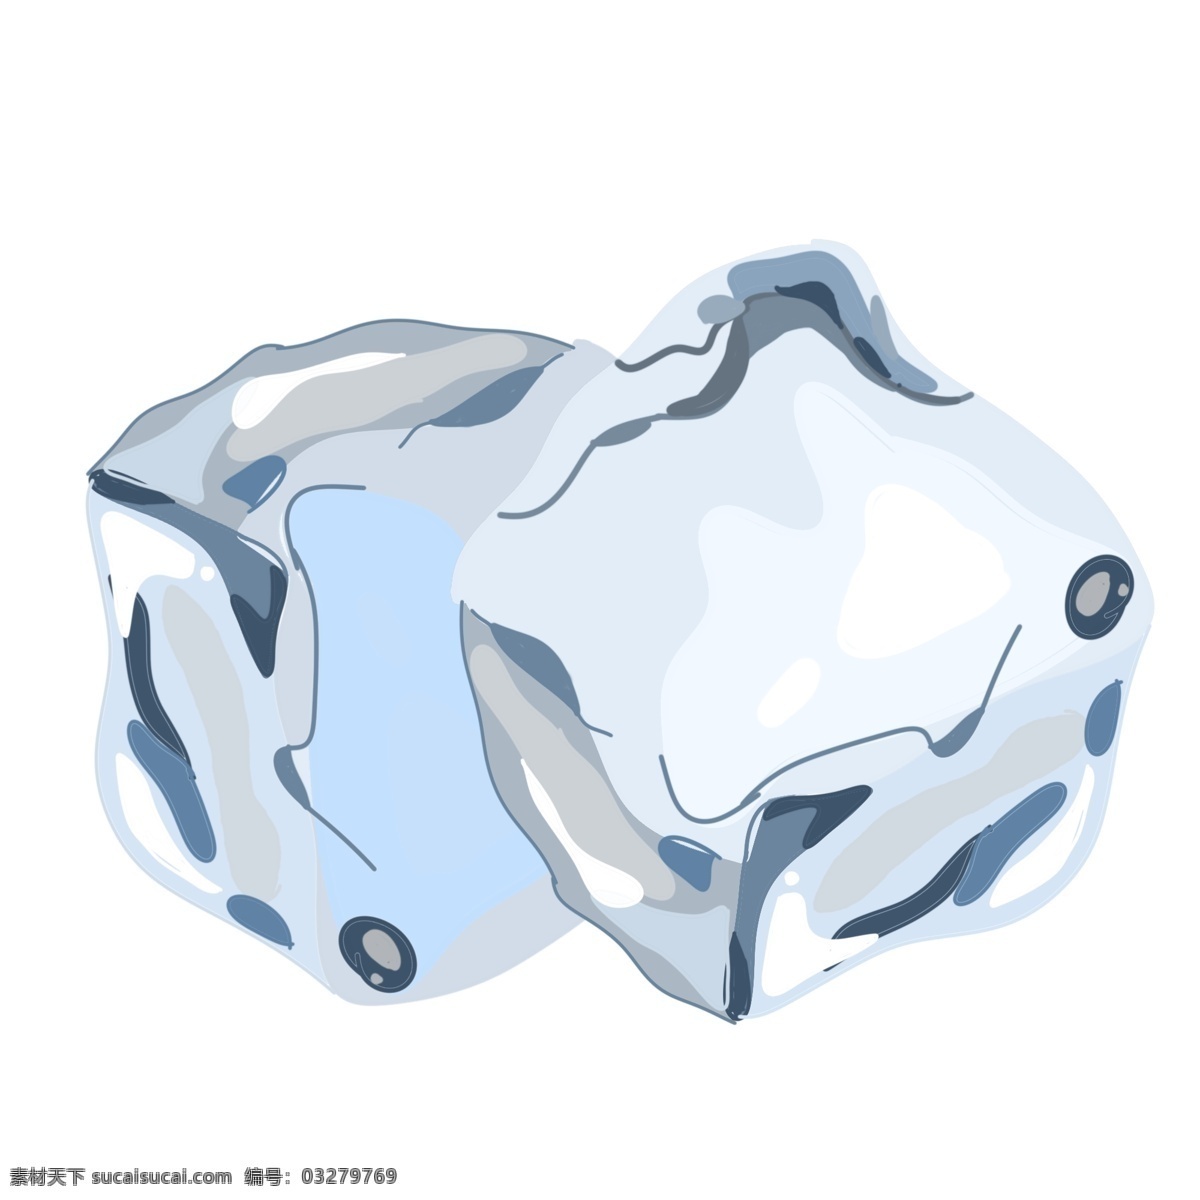 两 块 透明 冰块 插图 固体水 两块冰块 透明冰块 立体冰块 冰爽 冰 透明冰块插图 水资源